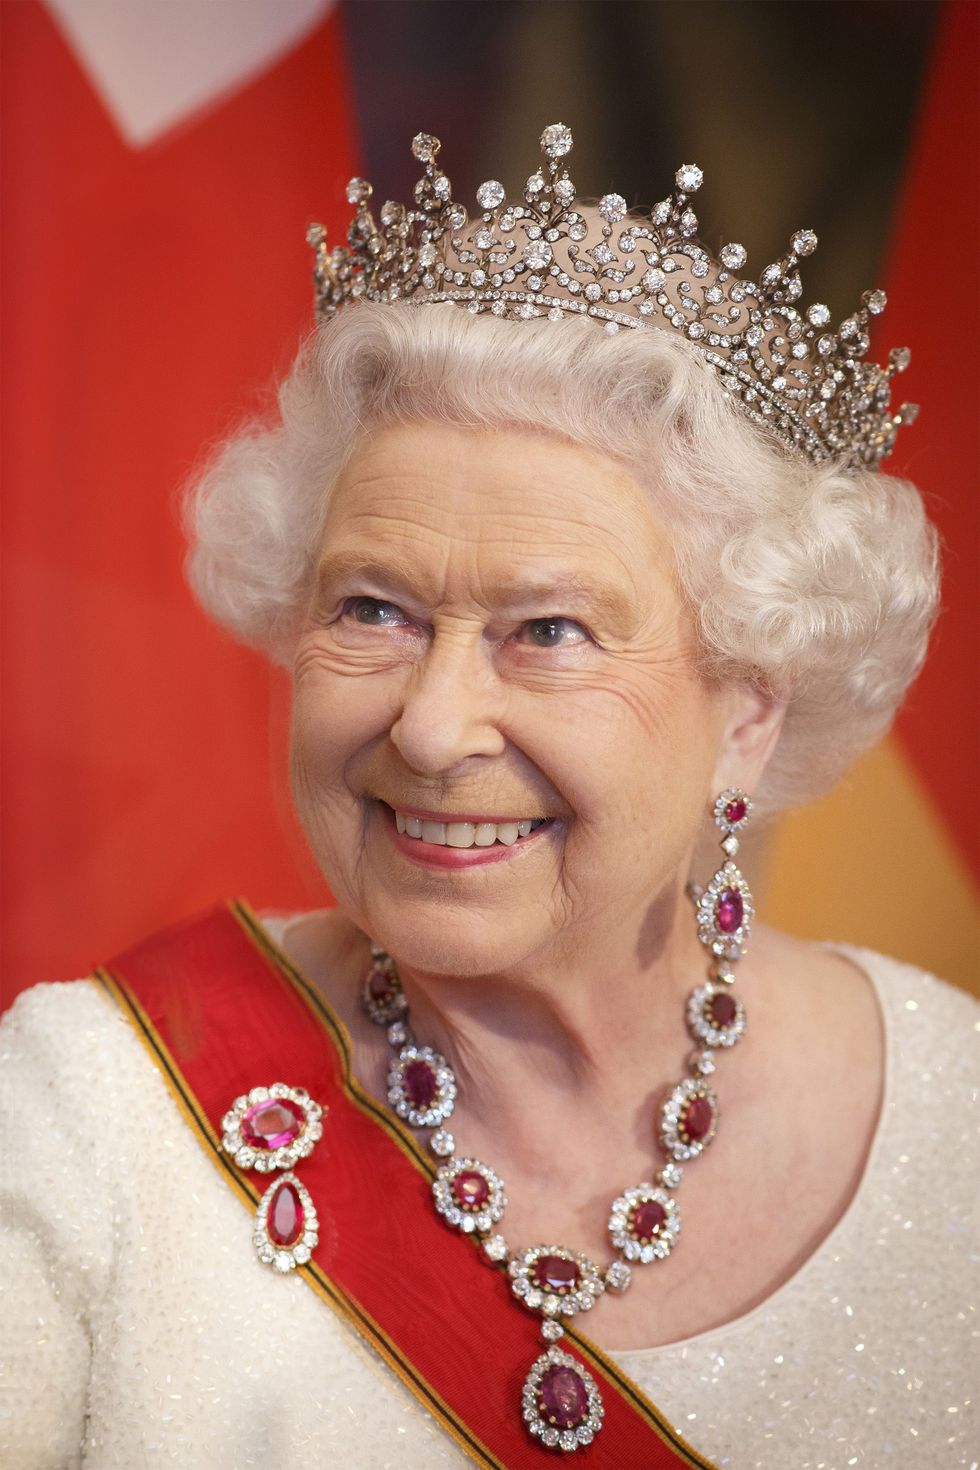 <p> Op 9 september&nbsp;2015, werd Elizabeth de langst zittende vorst op de troon&nbsp;en vrouwelijk hoofd van de staat. Op deze foto neemt ze&nbsp;deel aan een&nbsp;staatsbanket in Berlijn - Elizabeth is ook het meest bereisde staatshoofd, met 261 intercontinentale bezoeken en 96 staatsbezoeken naar 116 verschillende landen op de teller&nbsp;tot aan haar diamanten jubileum in 2012.&nbsp;&nbsp;</p>